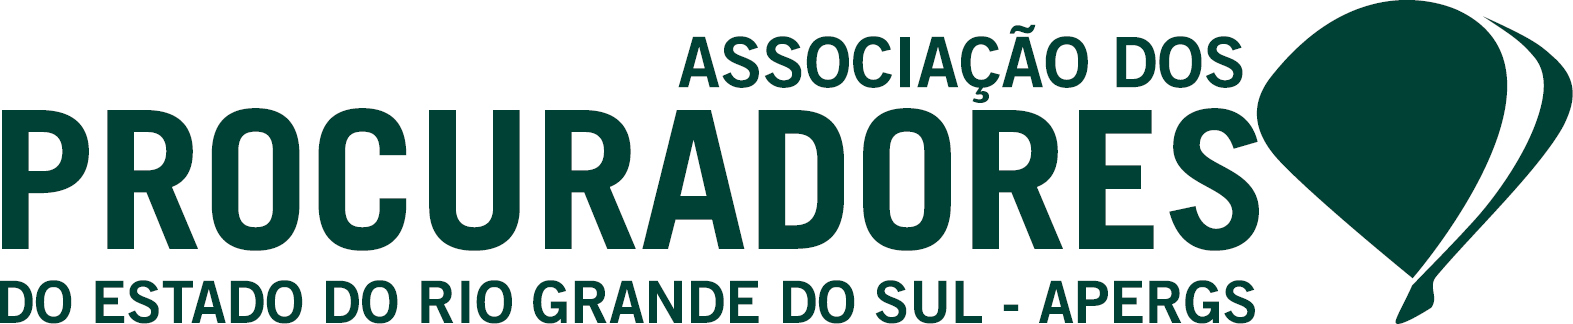 Associação dos Procuradores do Estado do Rio Grande do Sul